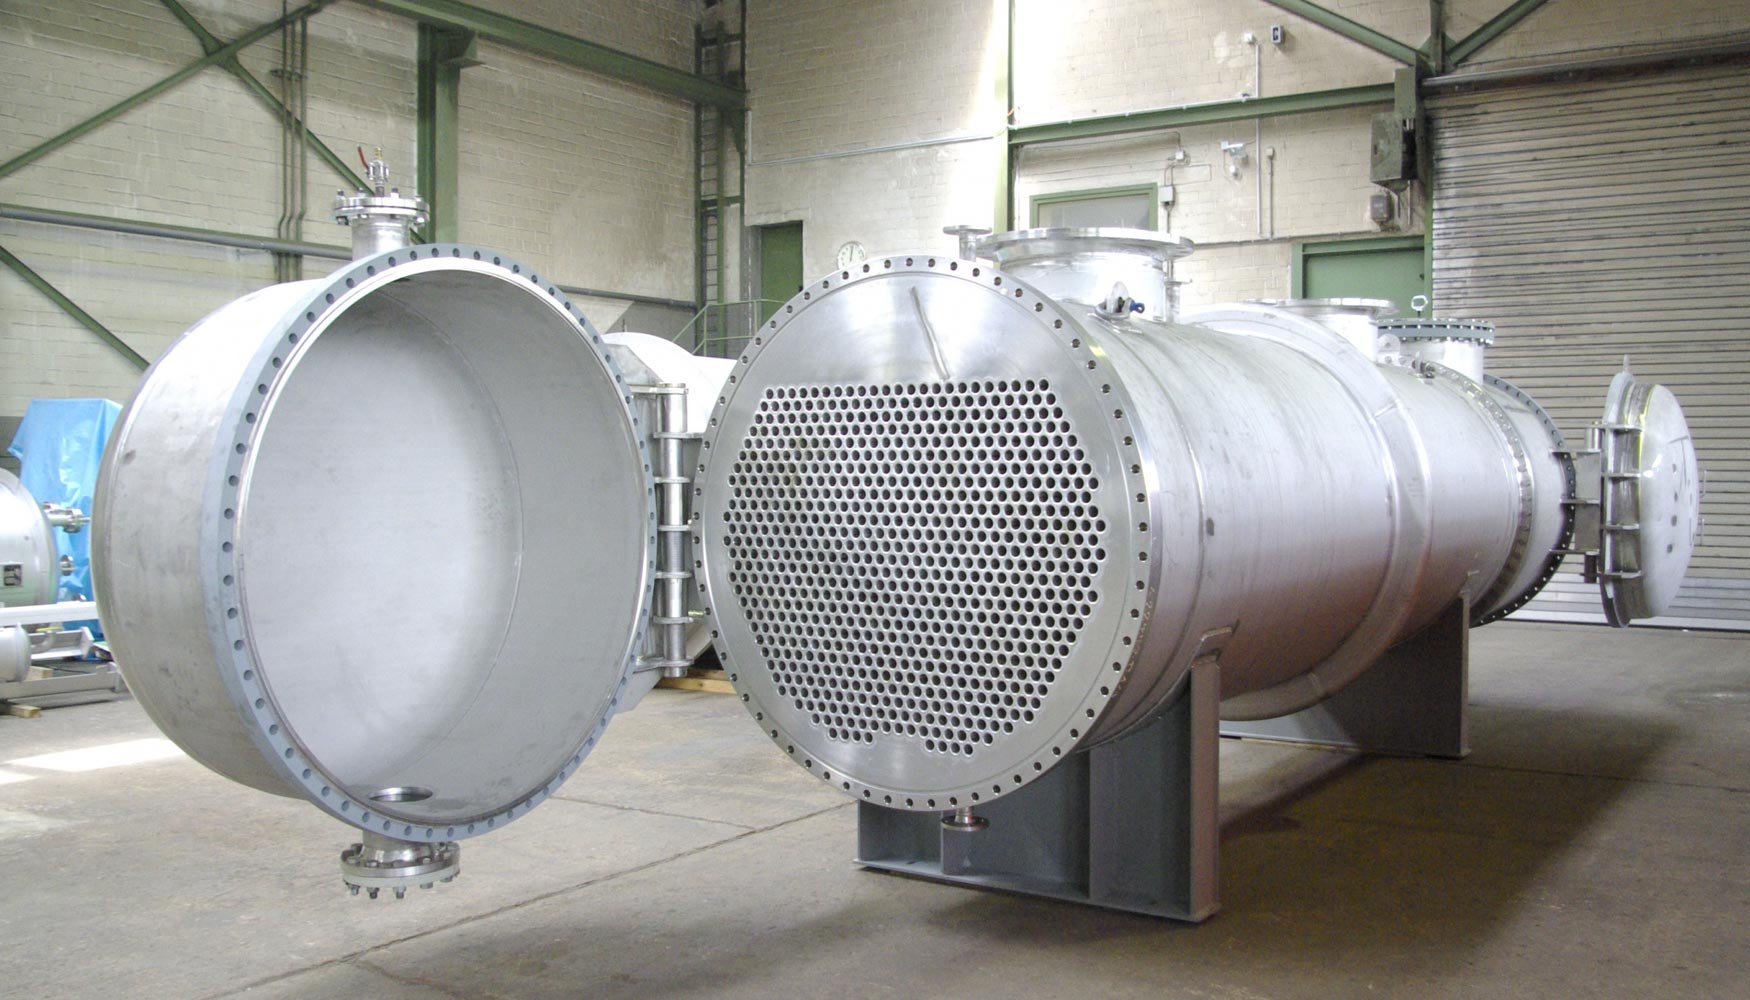 Los centros de mecanizado horizontal se utilizan con frecuencia en la produccin de intercambiadores de calor industriales...